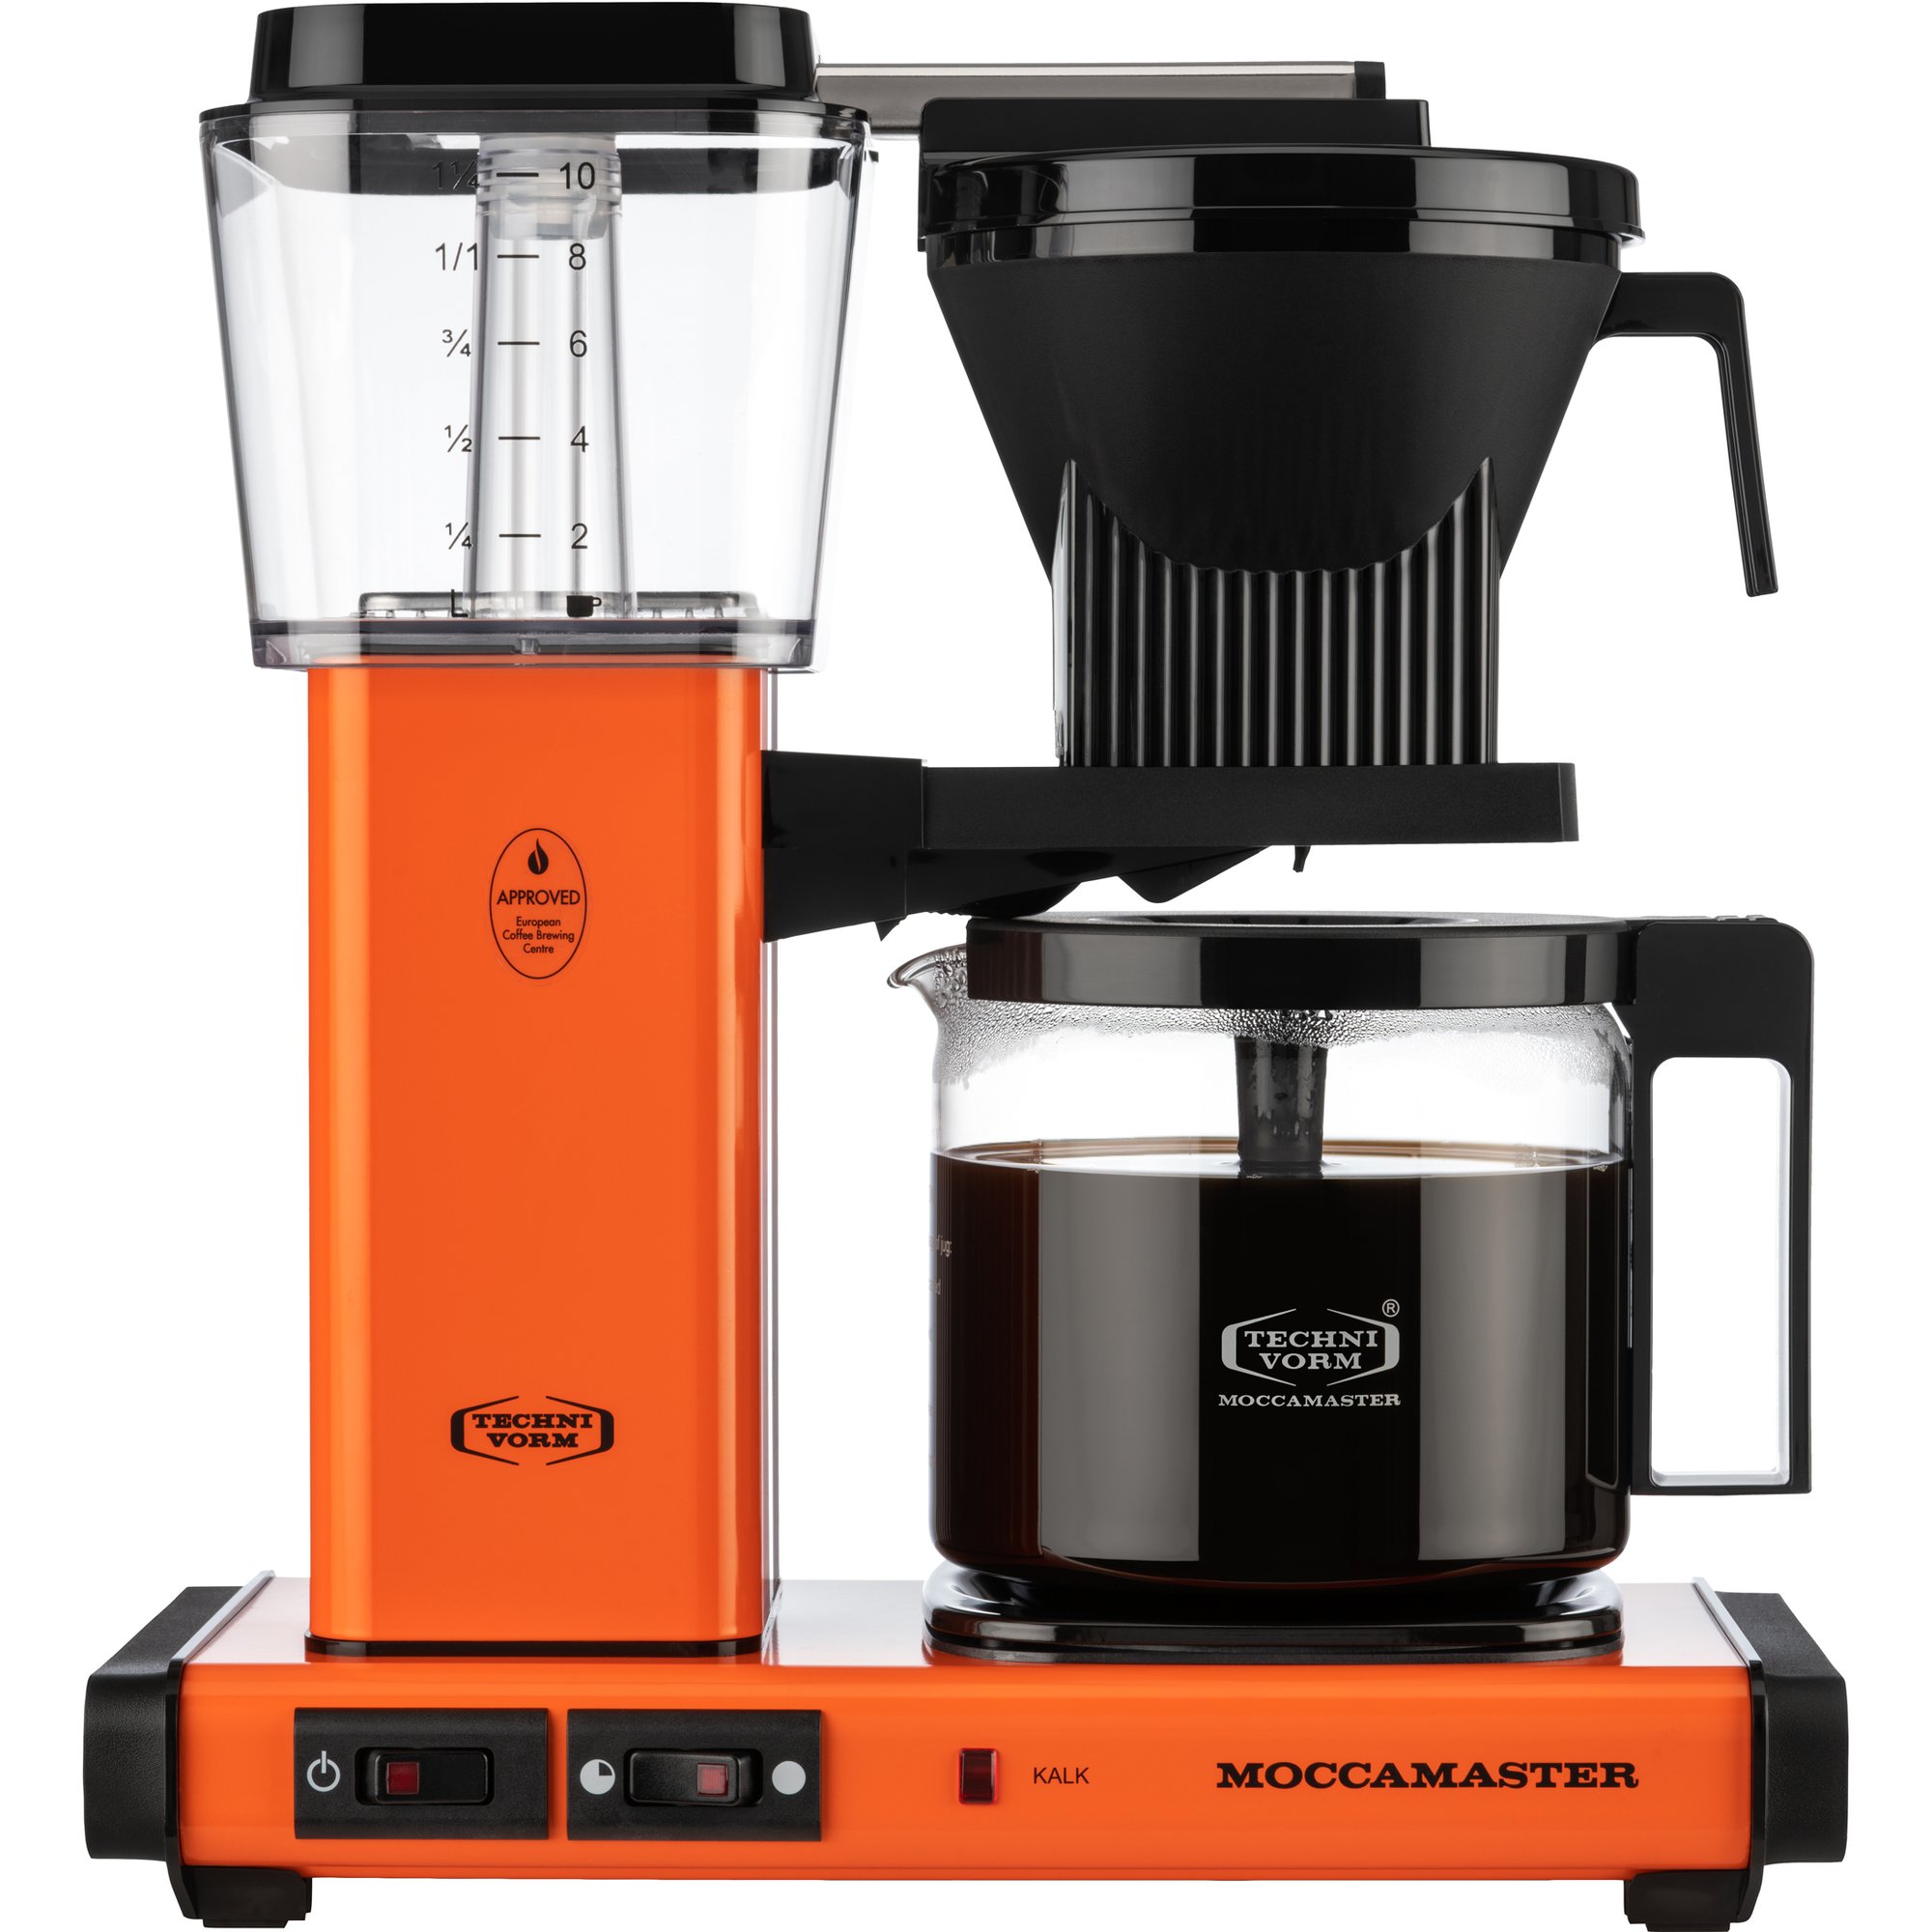 18: Moccamaster Automatic S Kaffemaskine, Orange